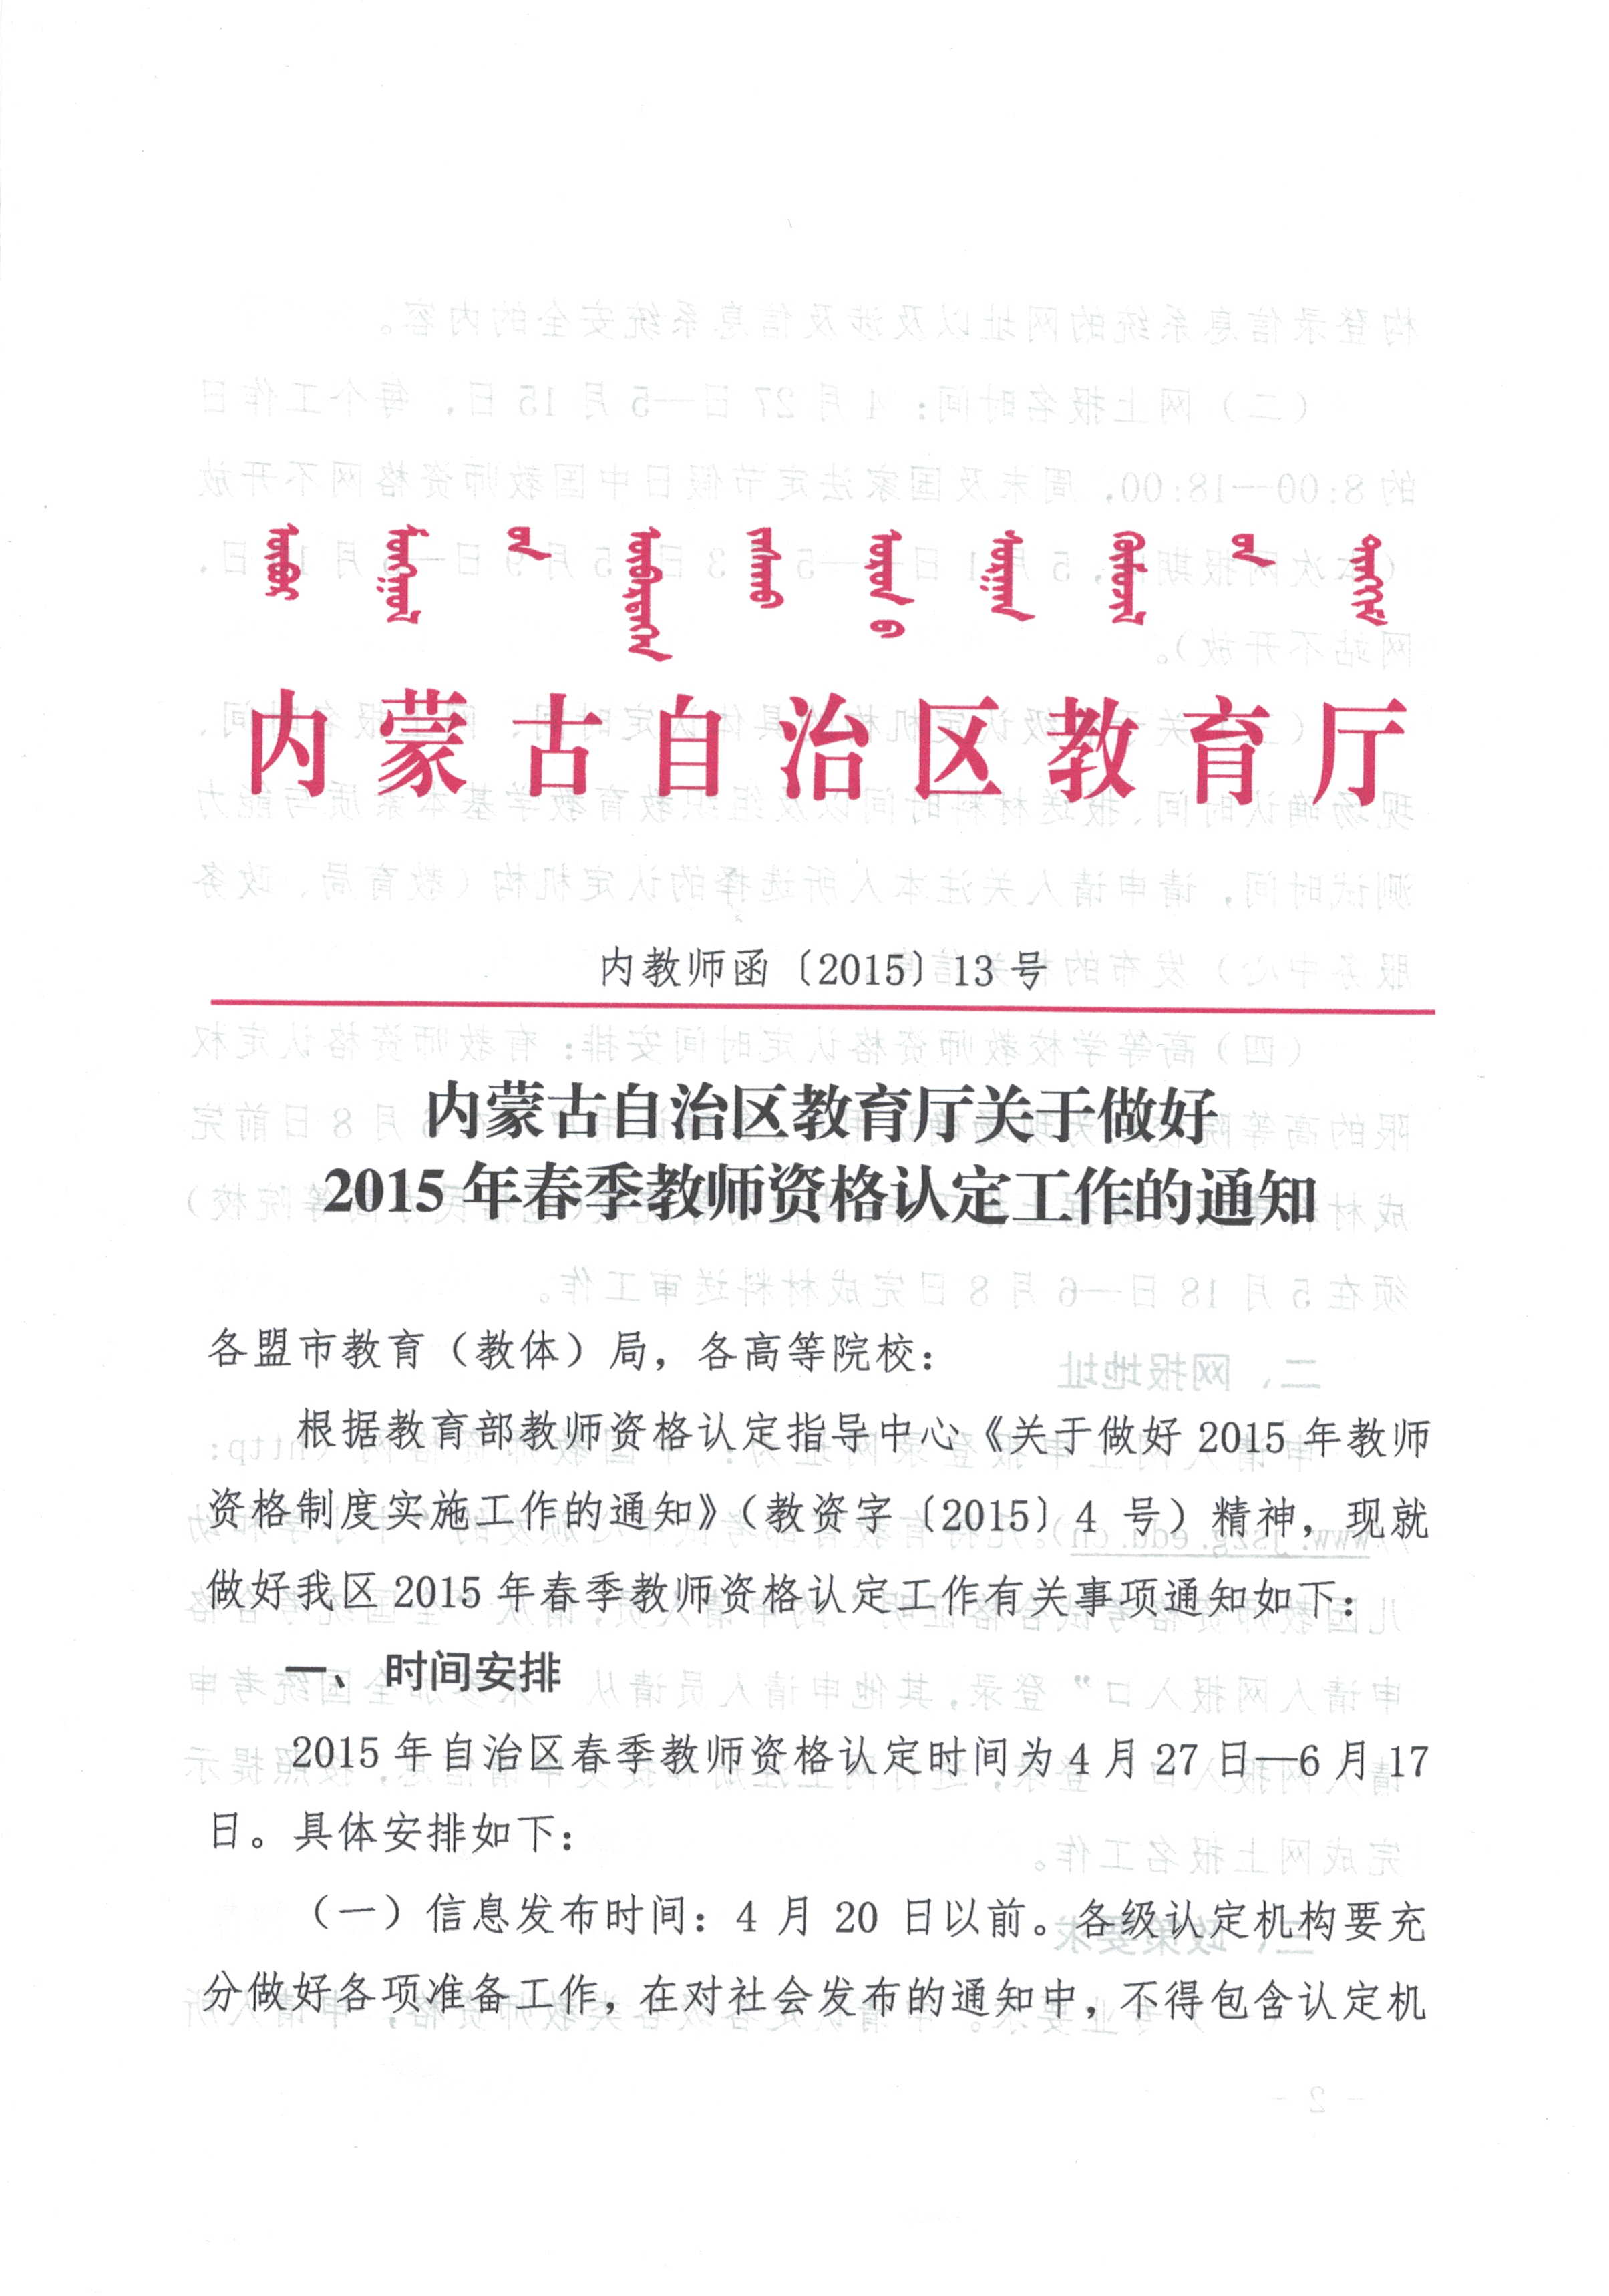 内蒙古2015年春季教师资格认定工作通知_职业